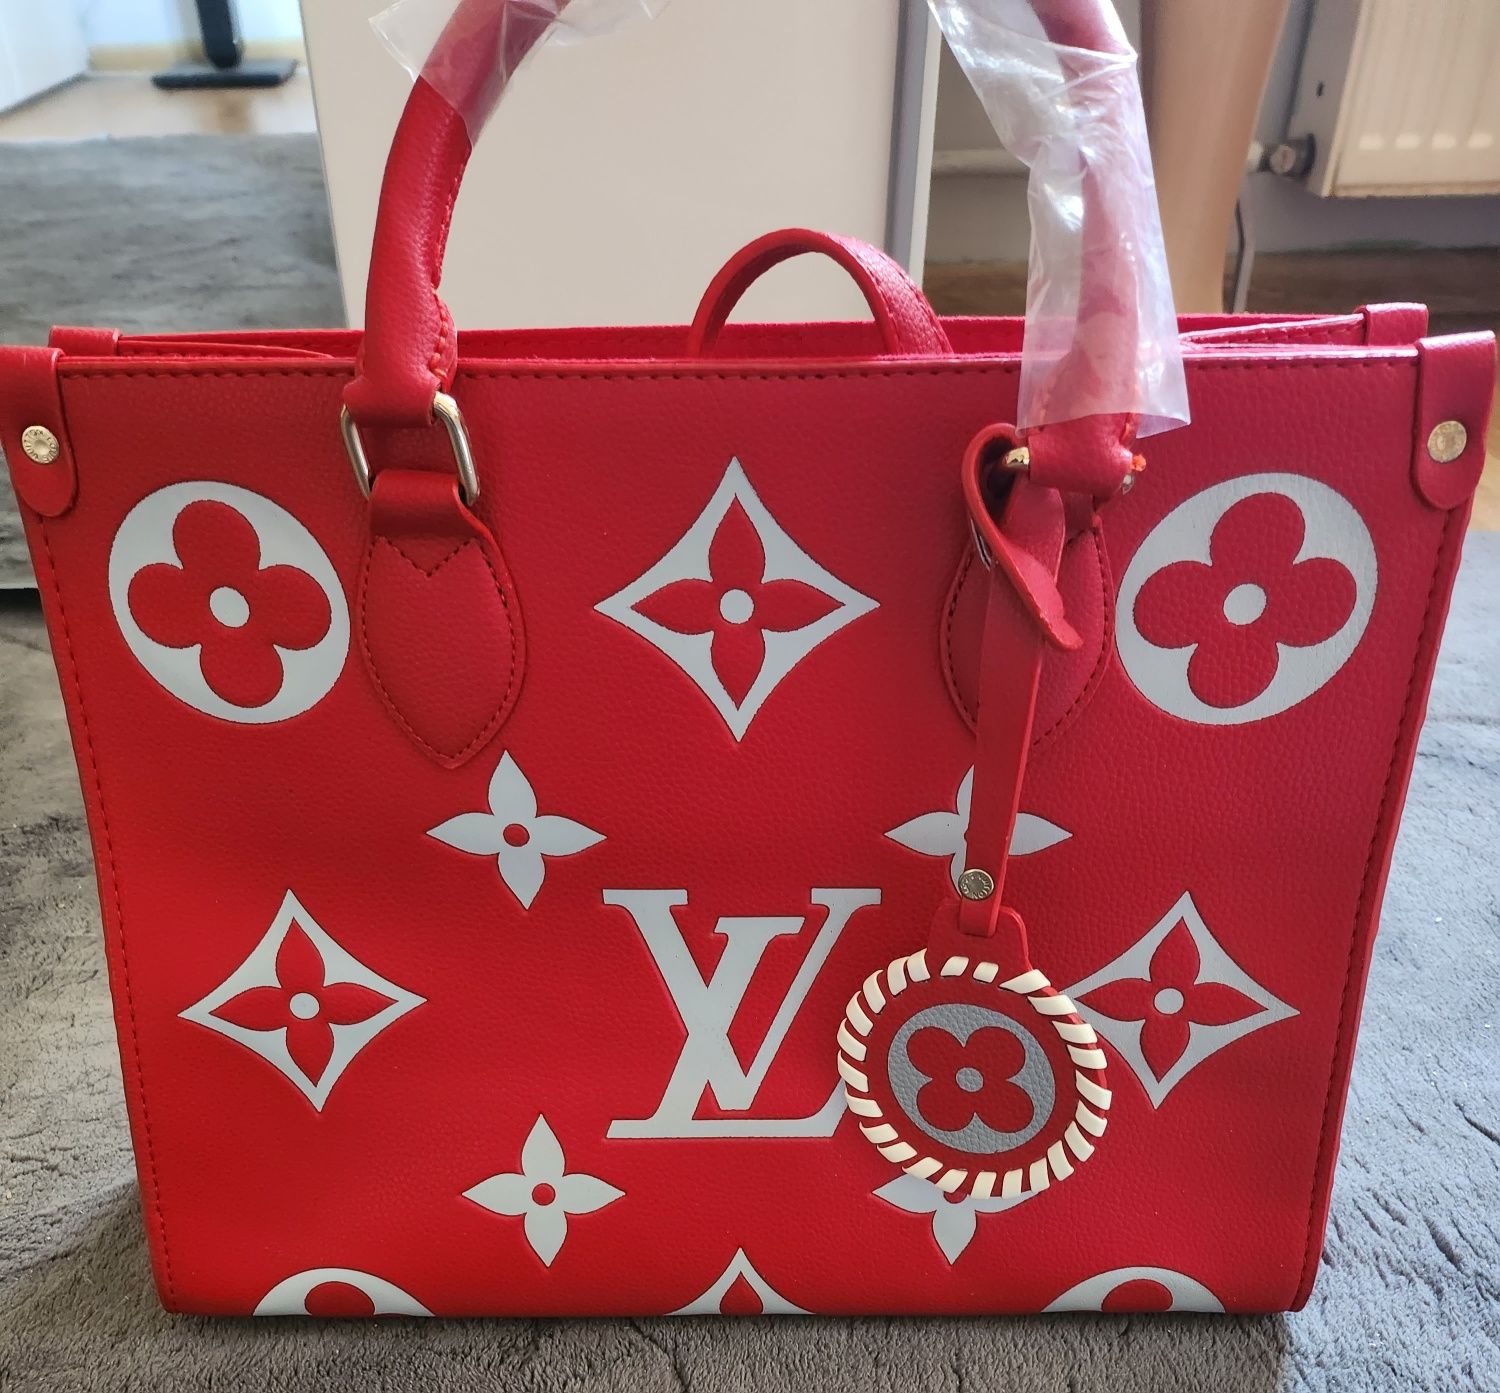 Torebka shopper Louis Vuitton bag Bydgoszcz • OLX.pl